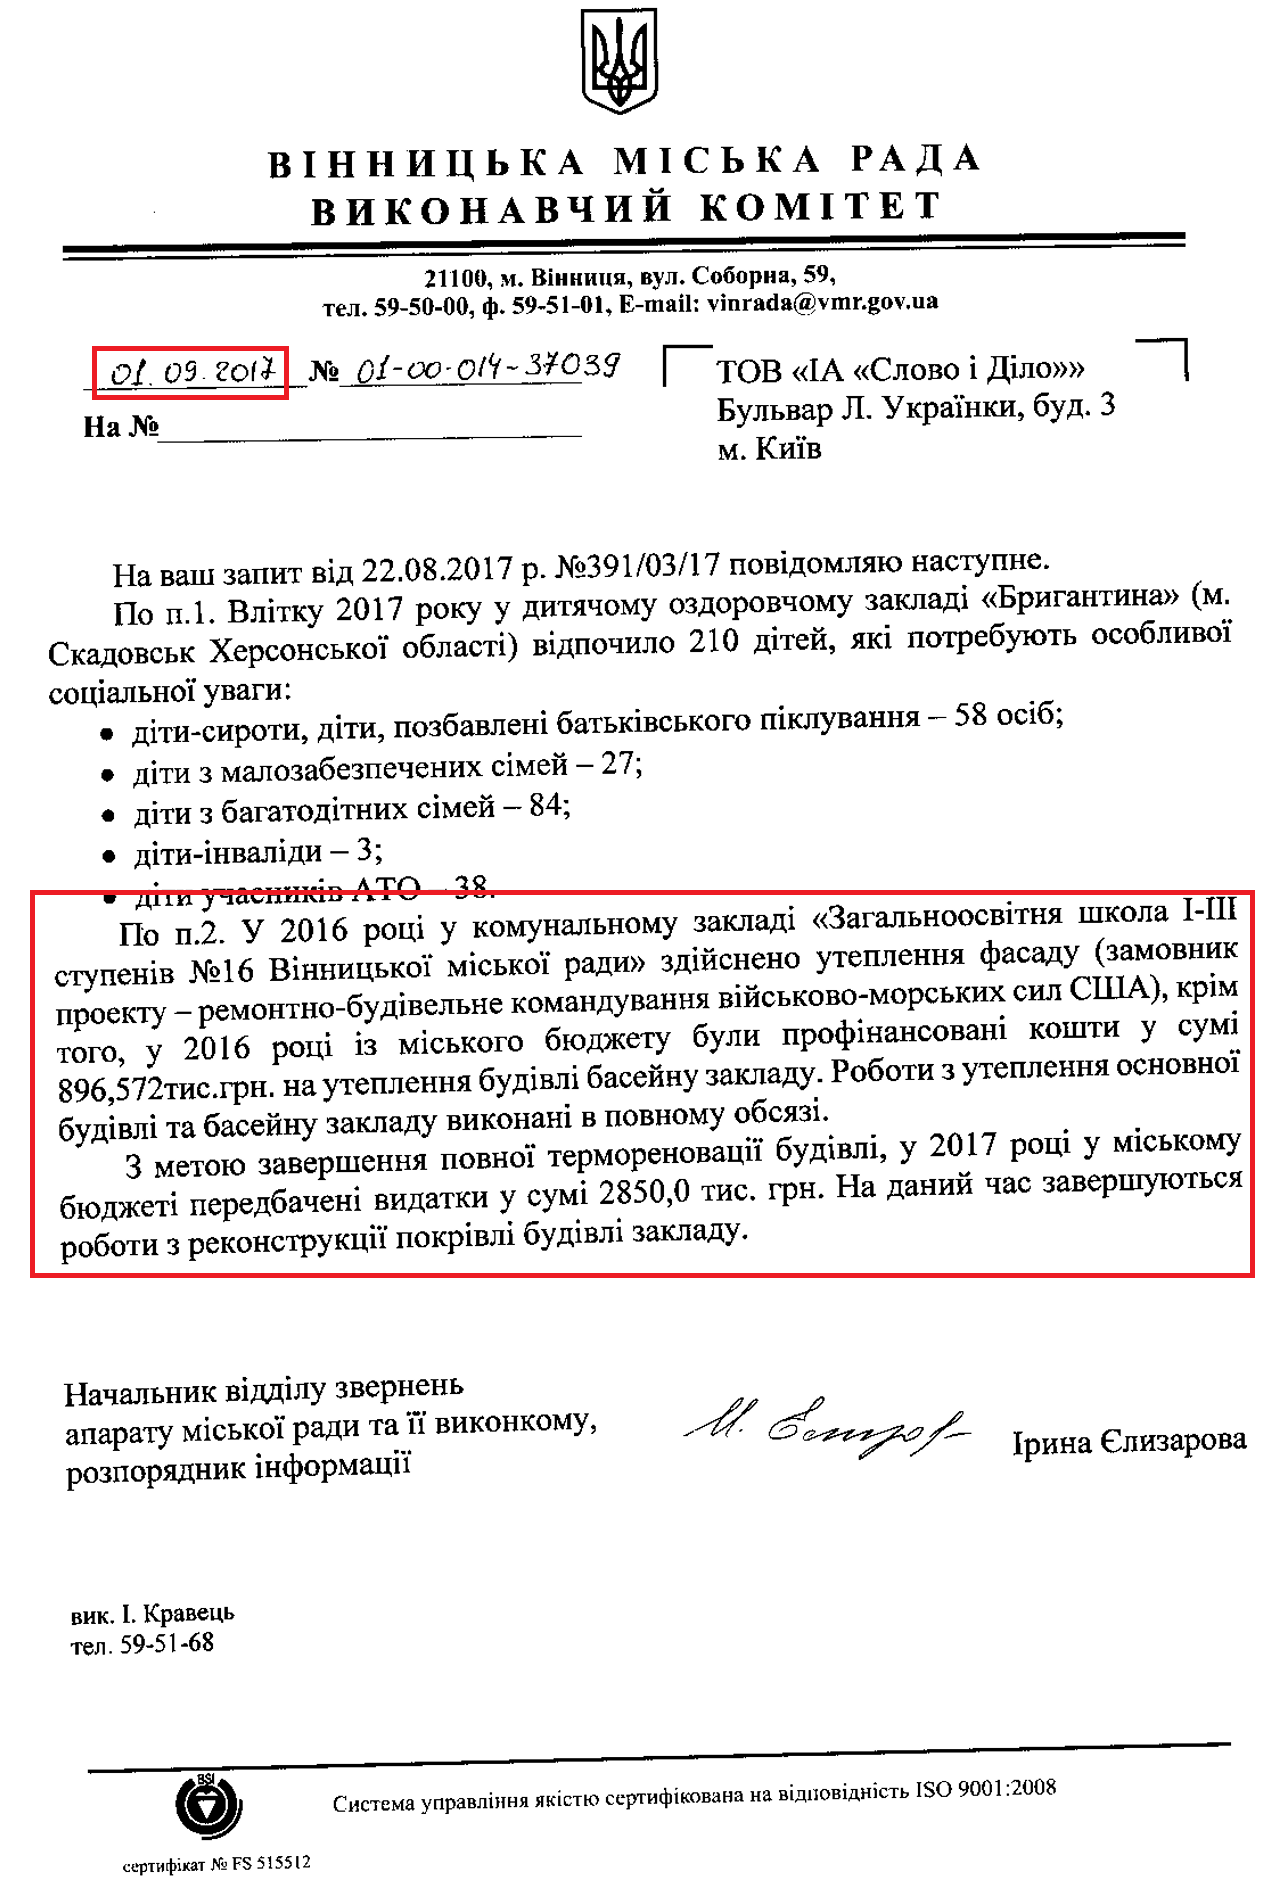 Лист начальника відділу звернень апарату Вінницької міської ради Єлизарової Ірини